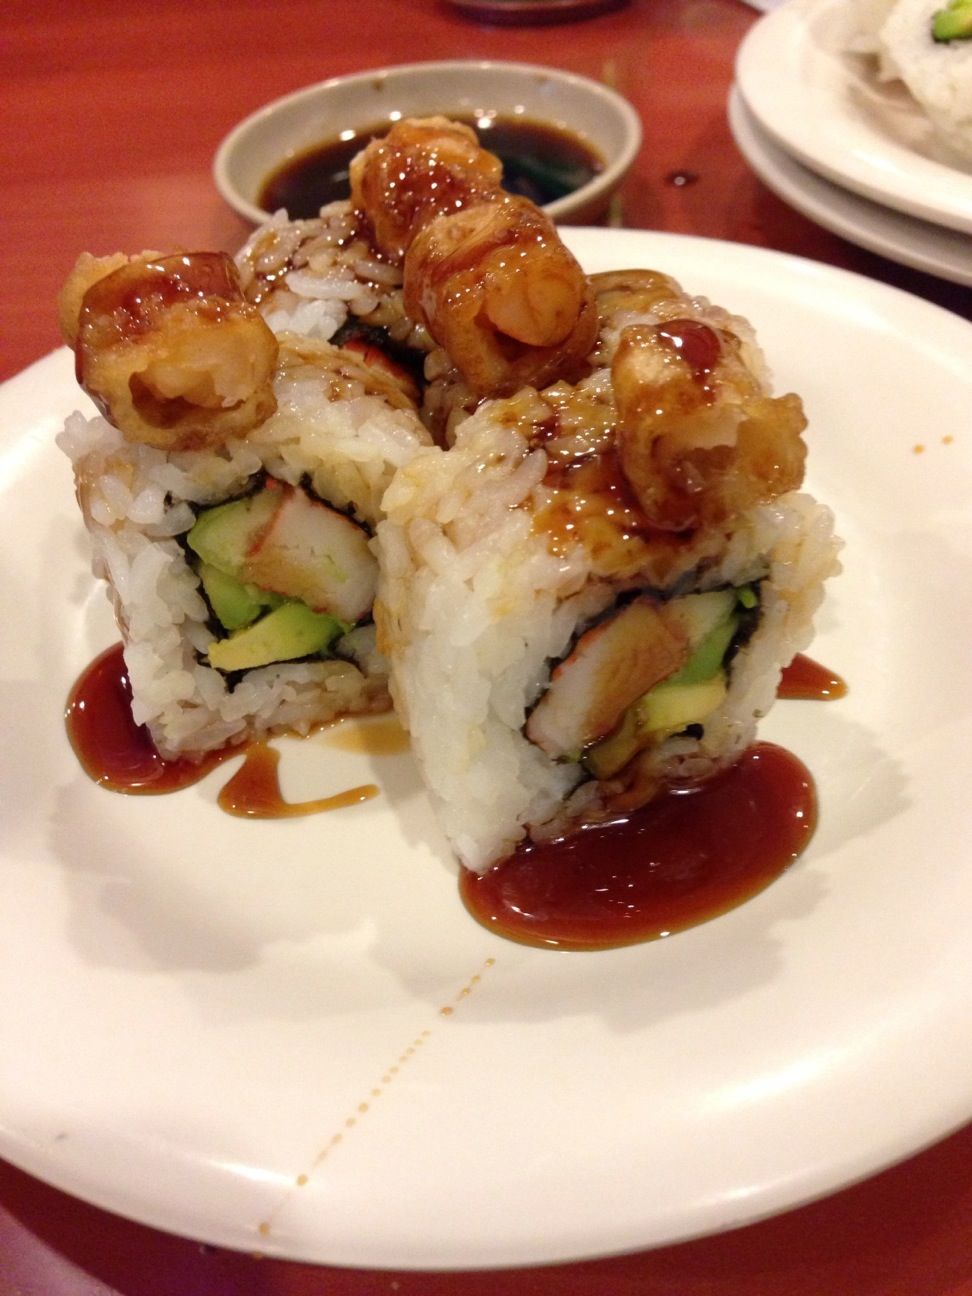 Sushi Koo